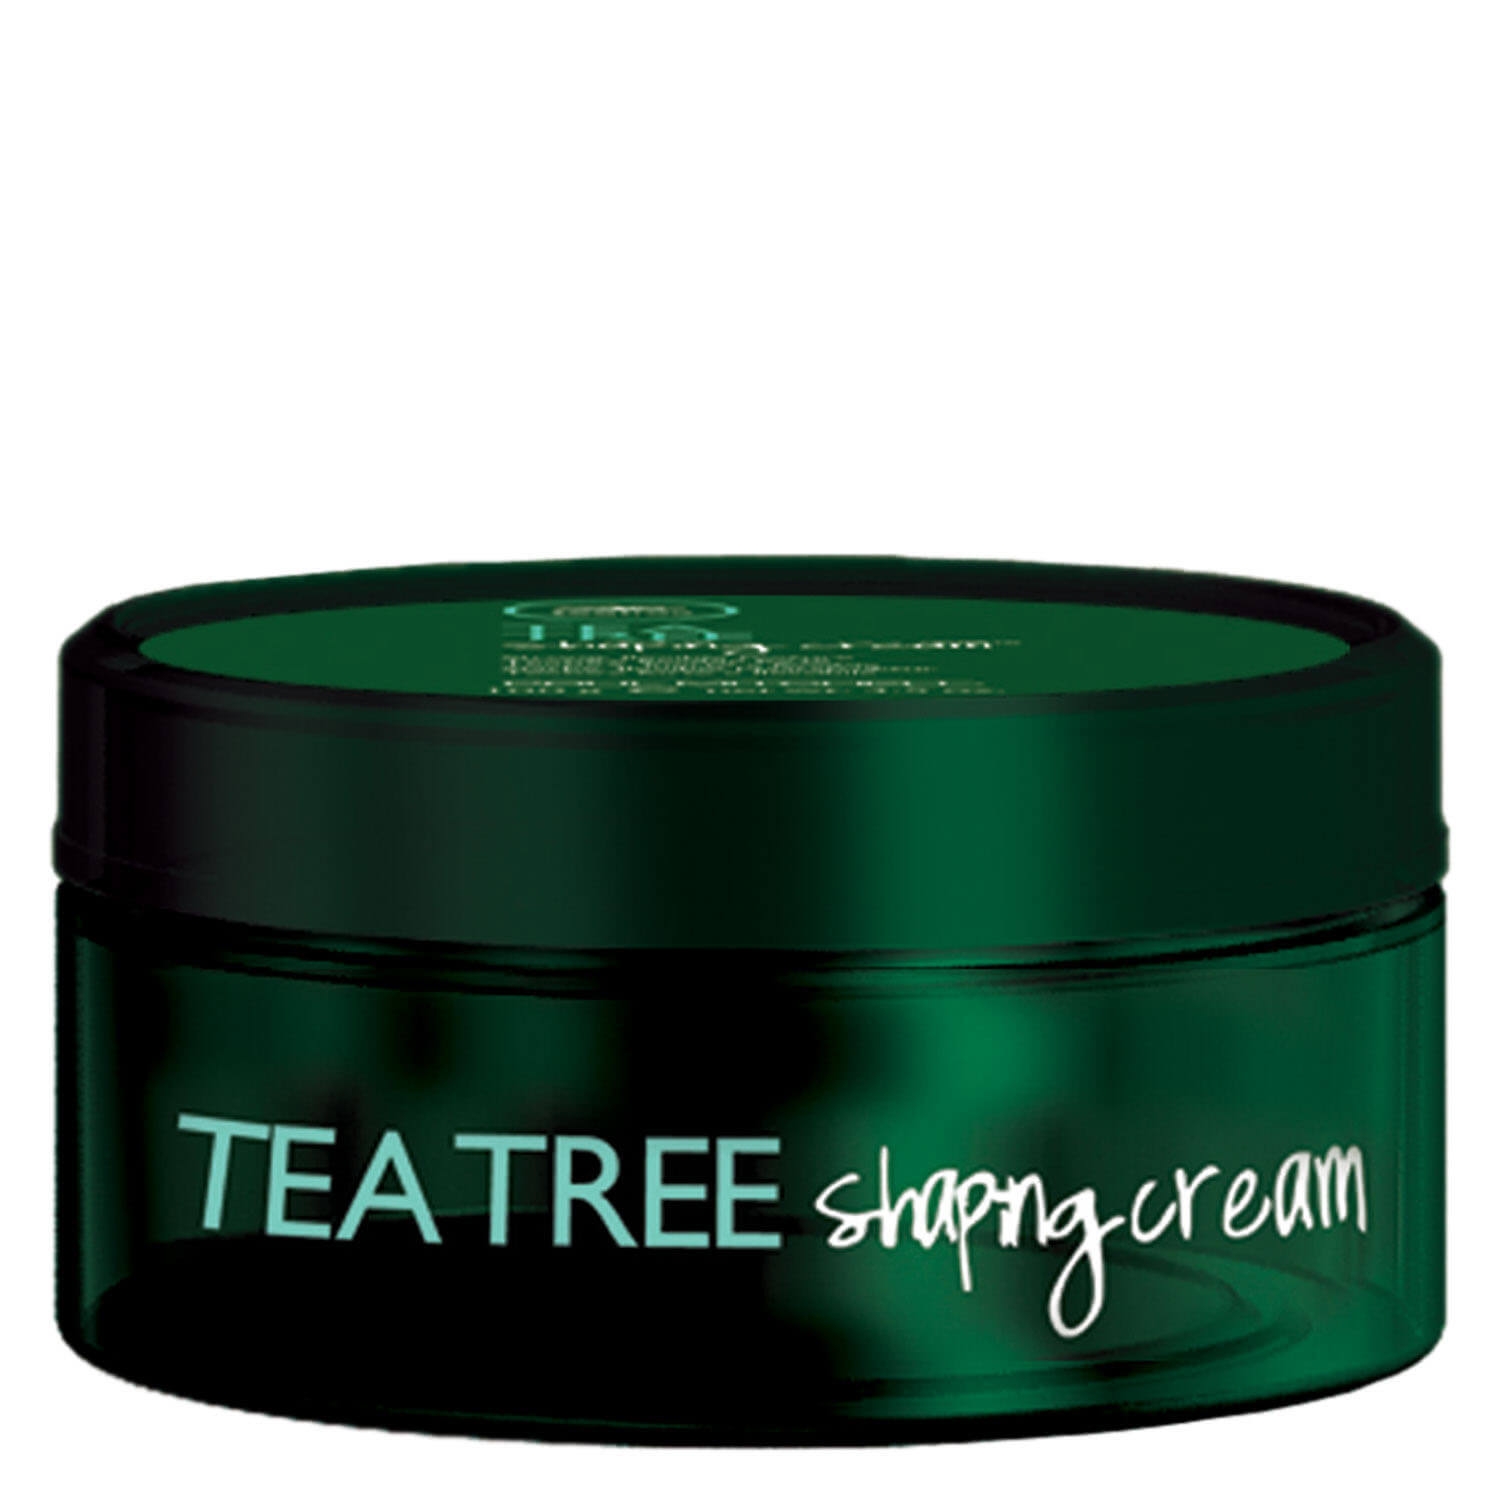 Produktbild von Tea Tree Special - Shaping Cream